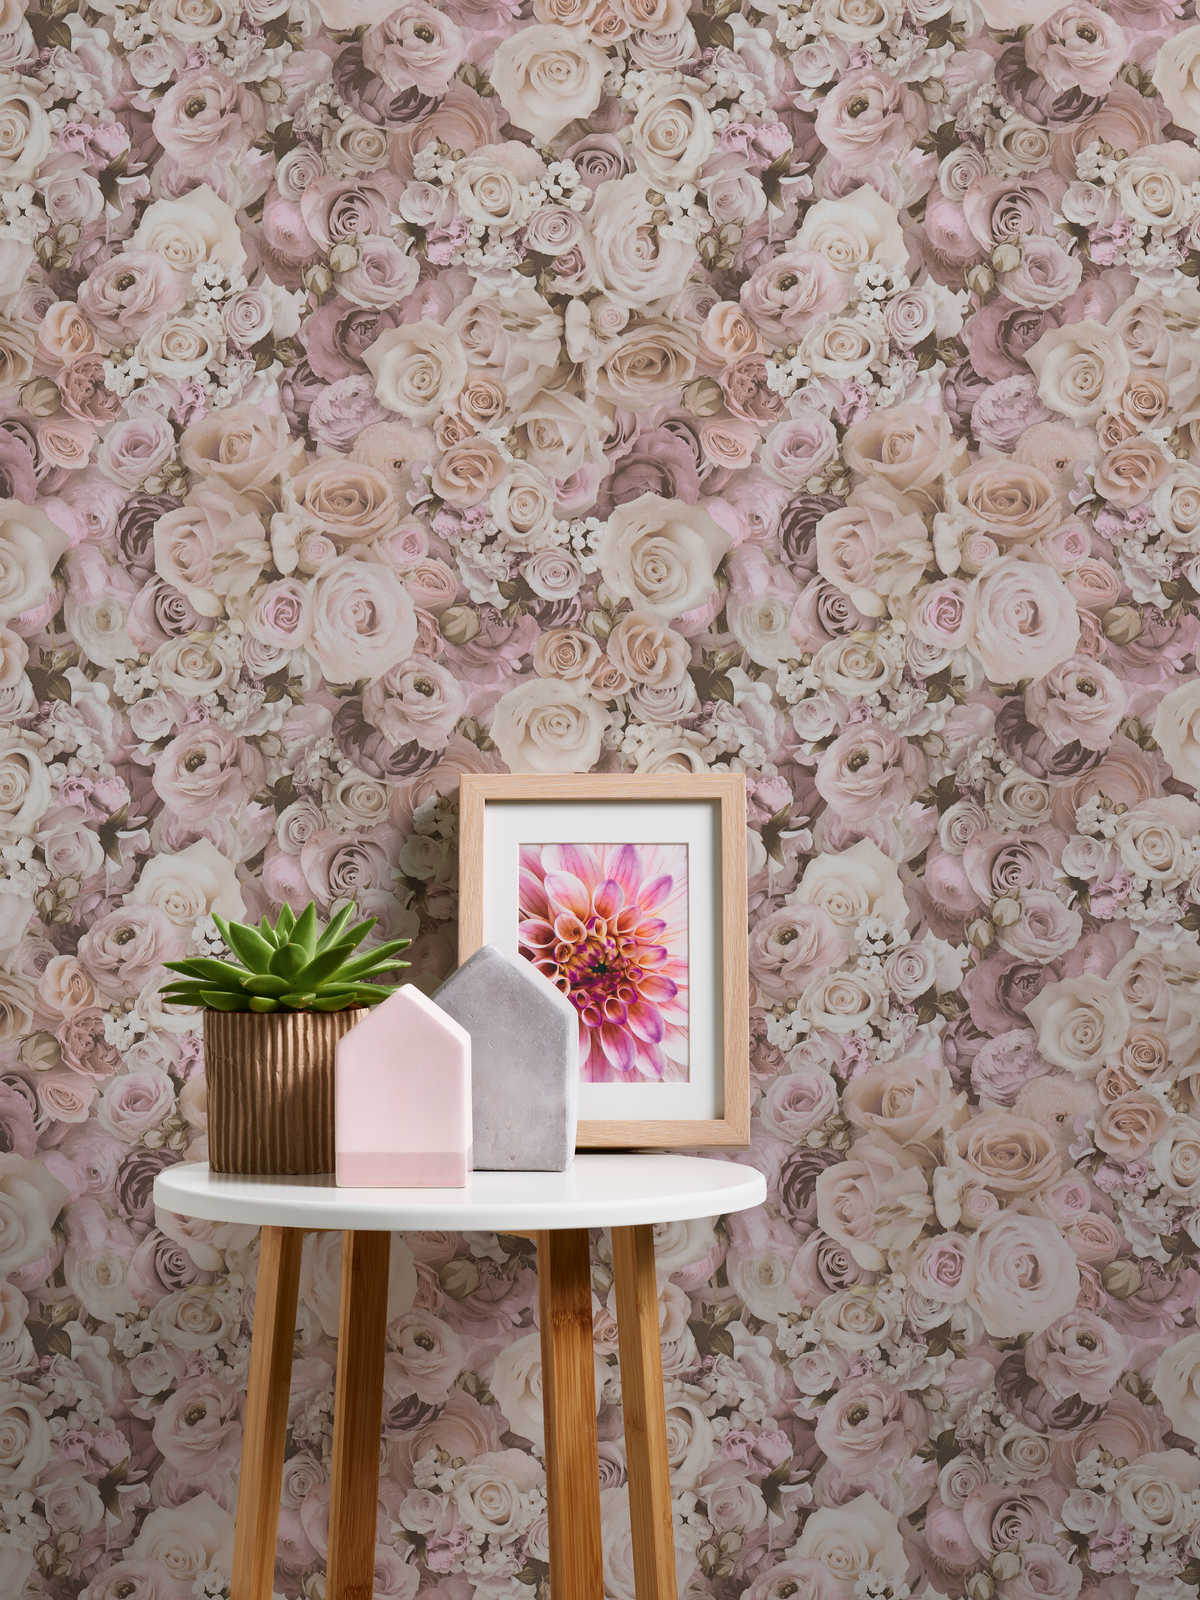             Papier peint adhésif | motif floral avec roses - rose, crème
        